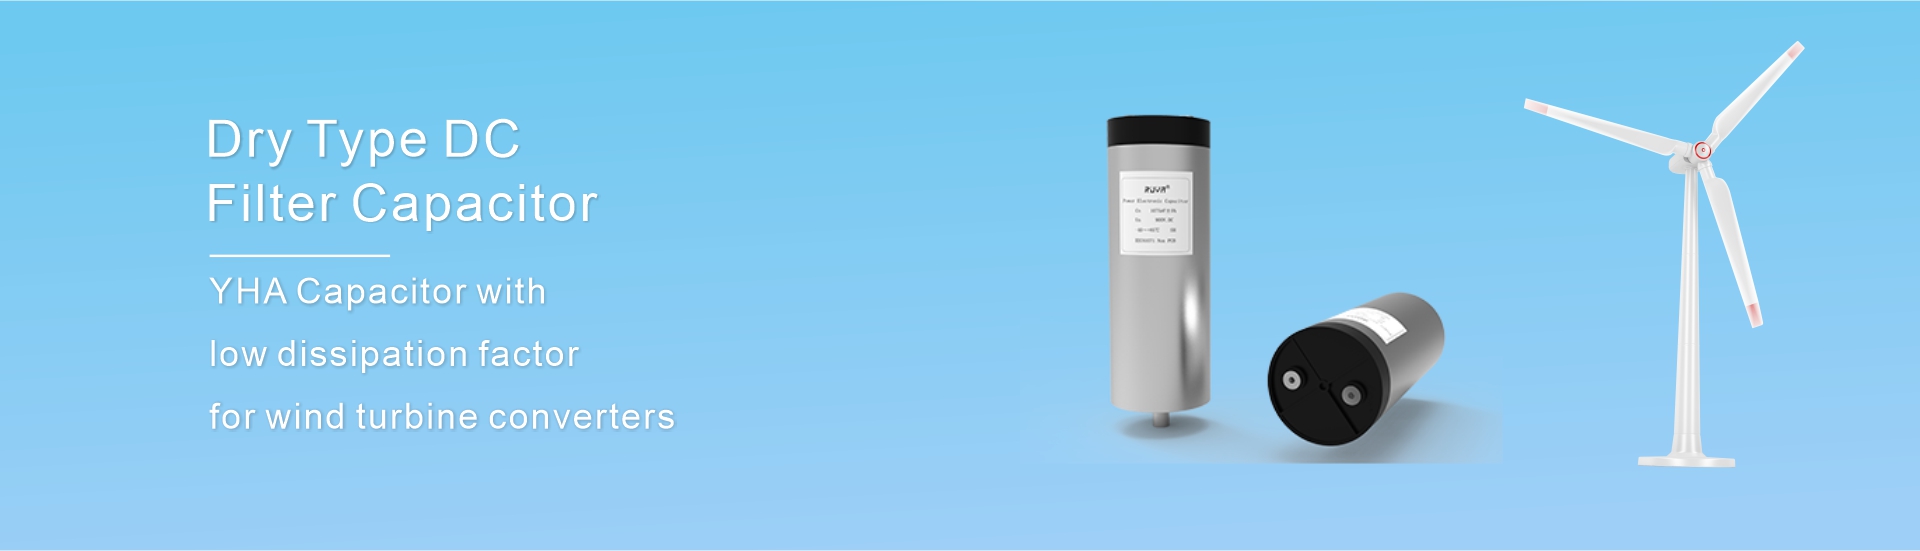 Condensateur de filtre CC de type sec YHA avec boîte en aluminium